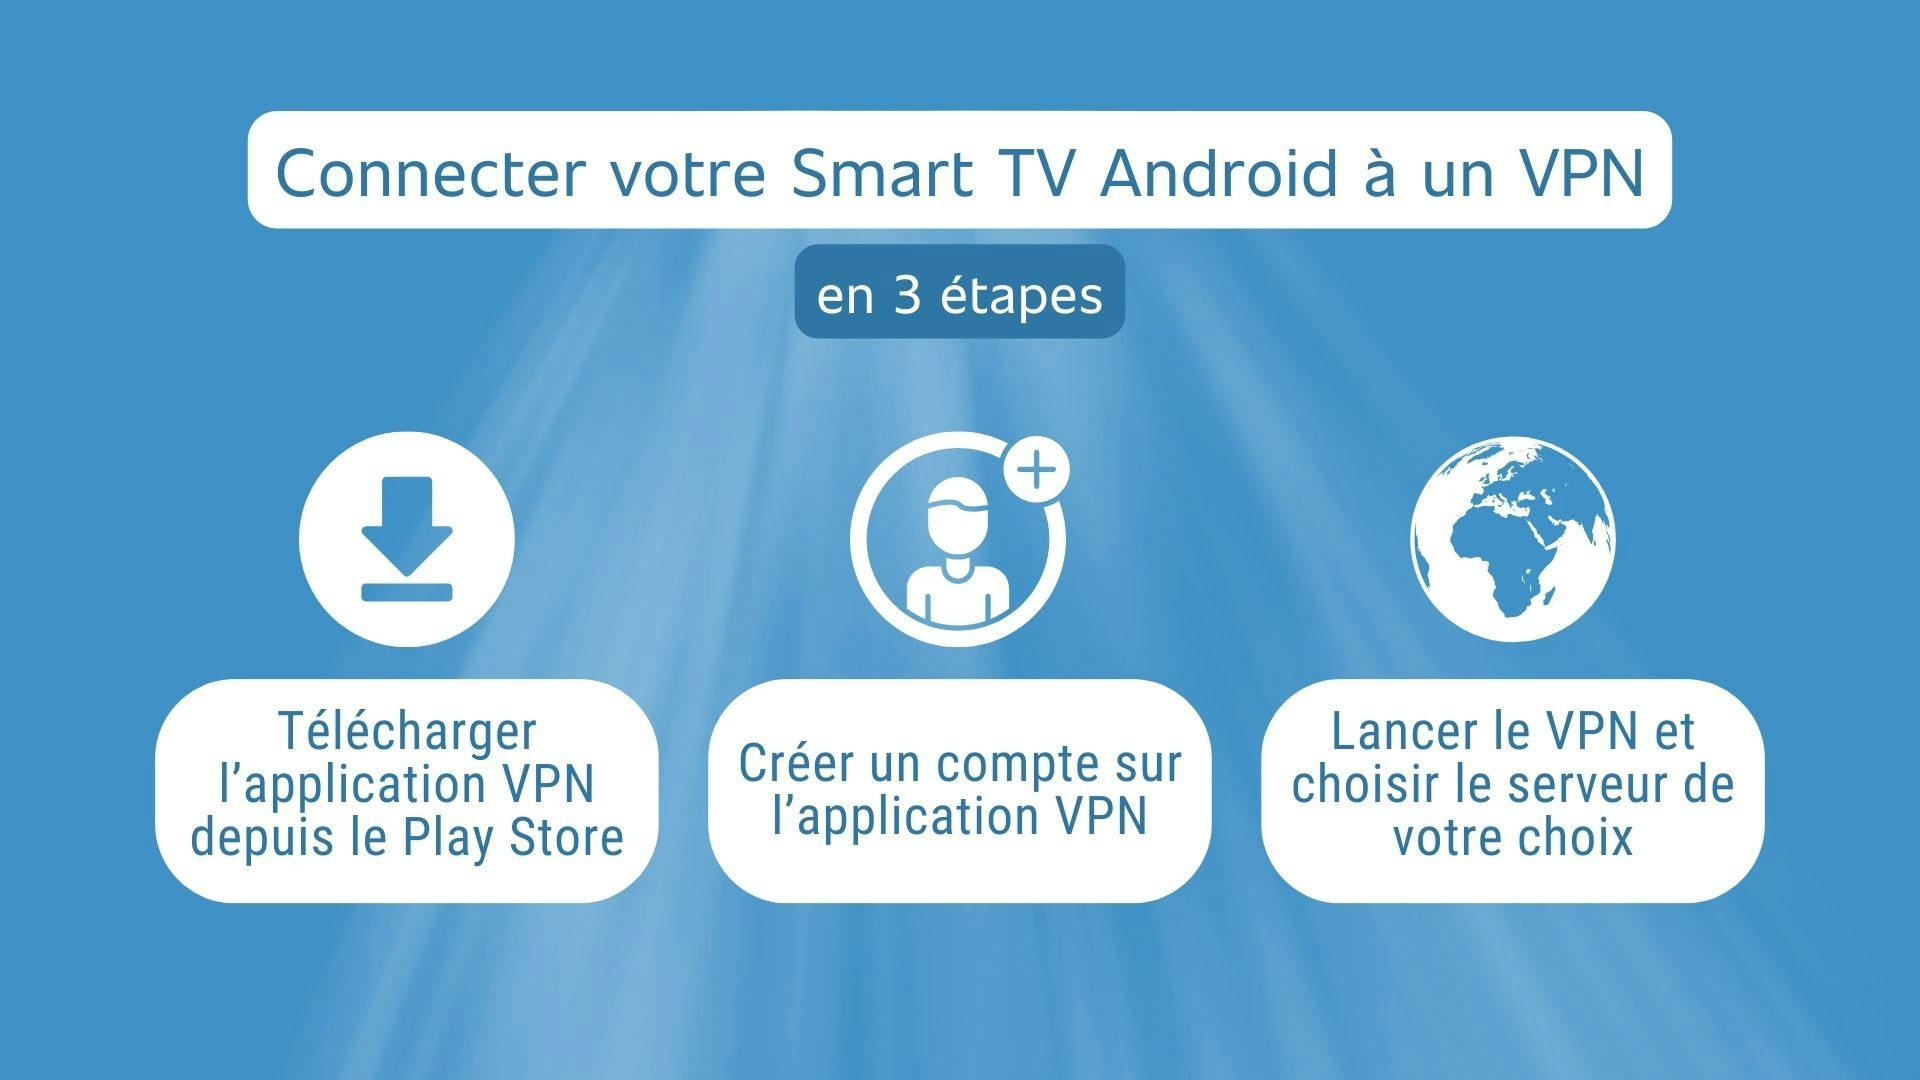 illustration montrant les 3 étapes à suivre pour connecter une smart TV Android à un VPN